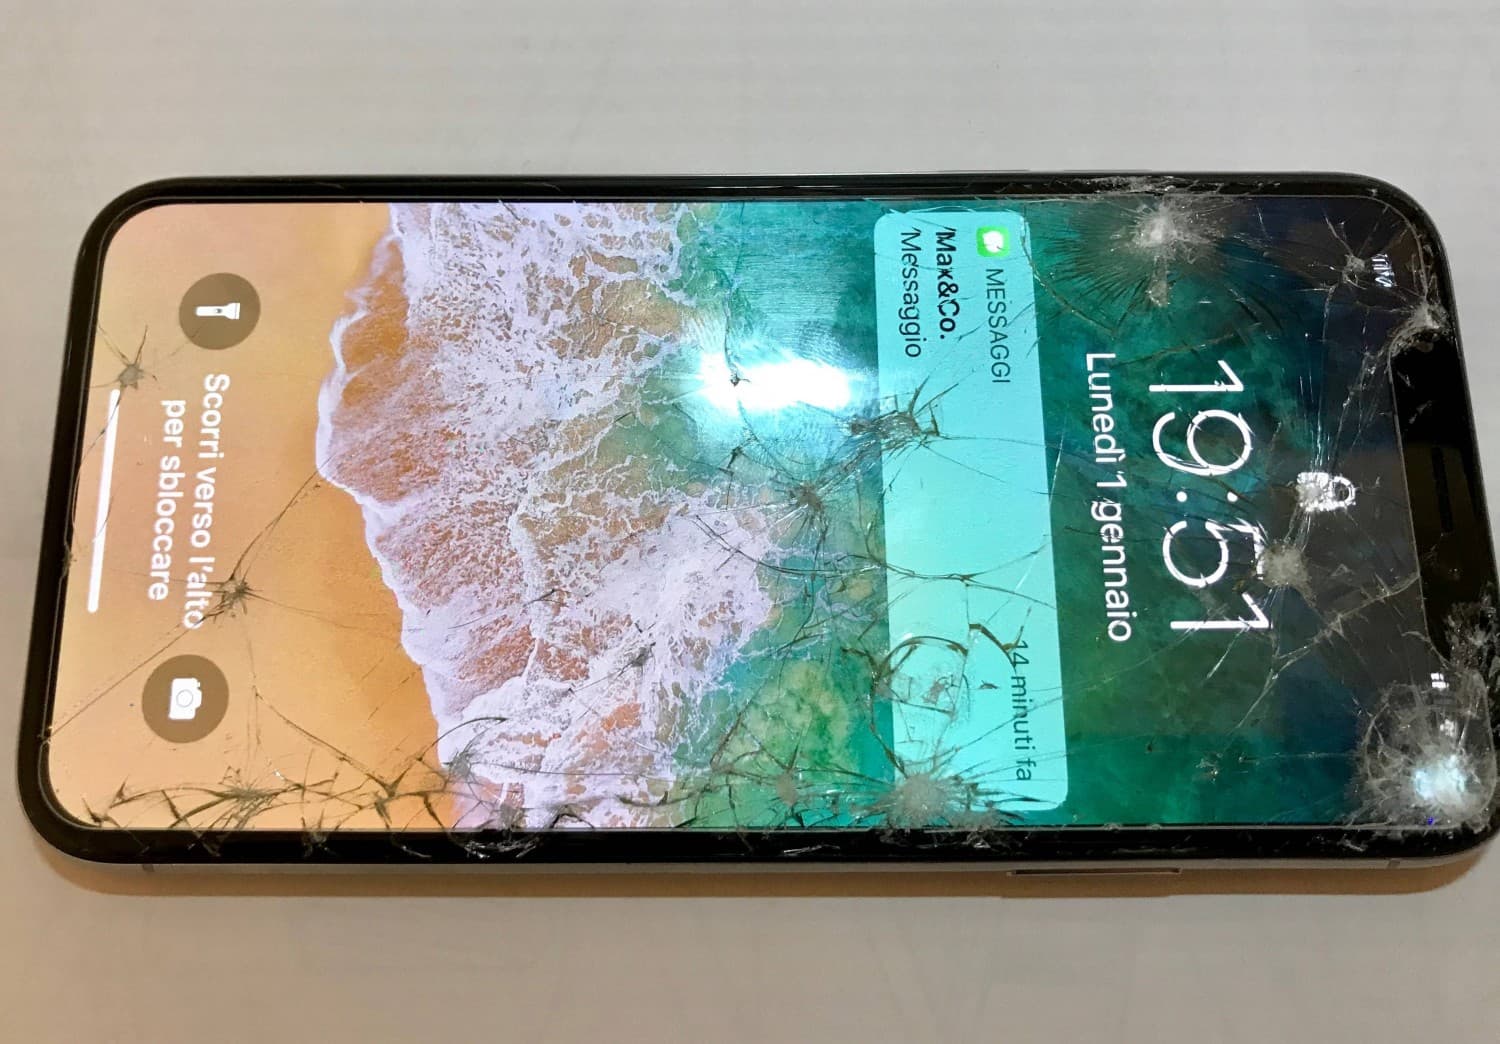 5 Tác hại khôn lường nếu bạn không thay màn hình iPhone khi bị vỡ